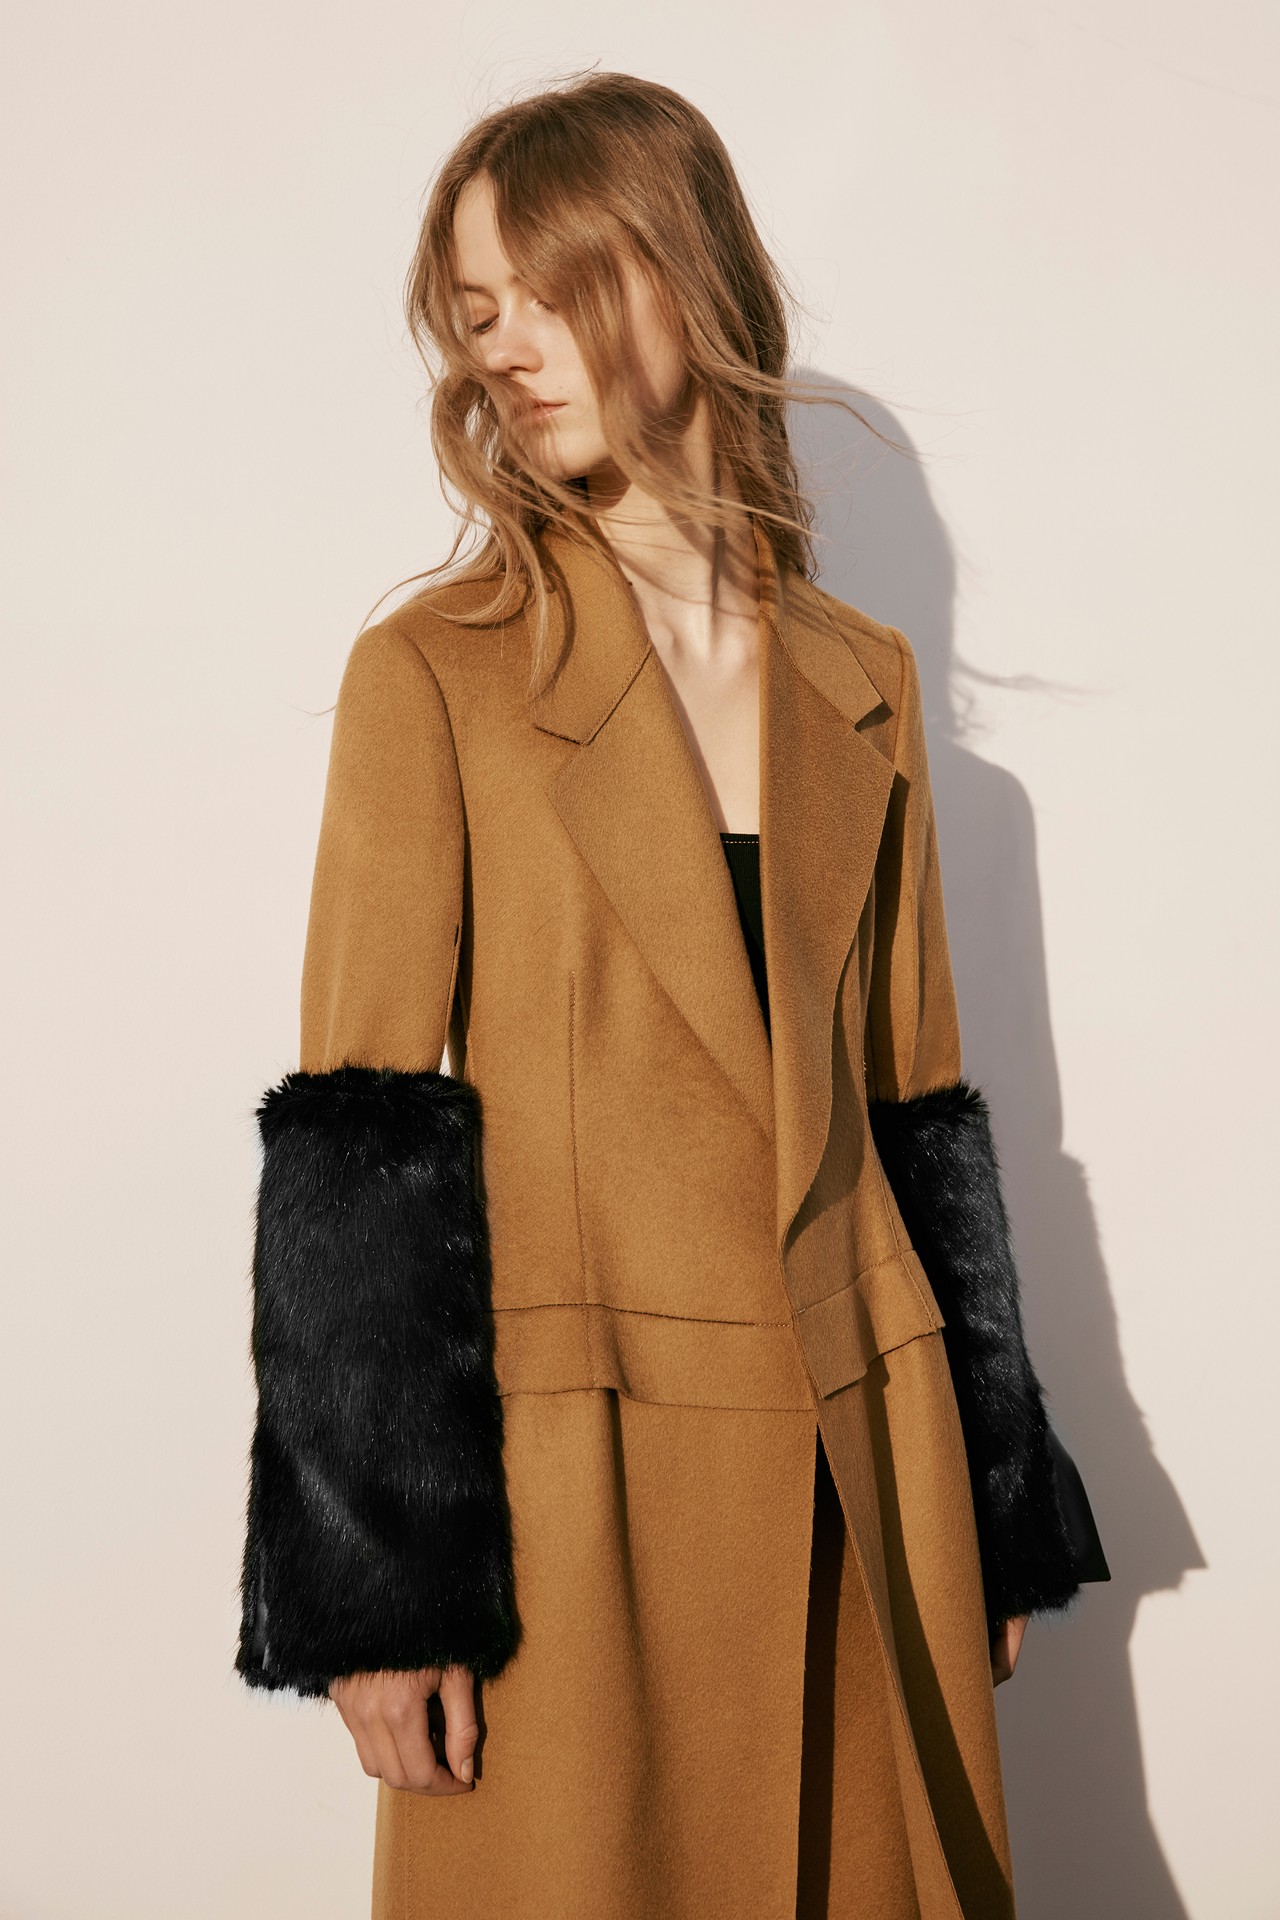 Calvin Klein collezione donna Pre-Fall 2016: look minimal ma sensuali, le foto